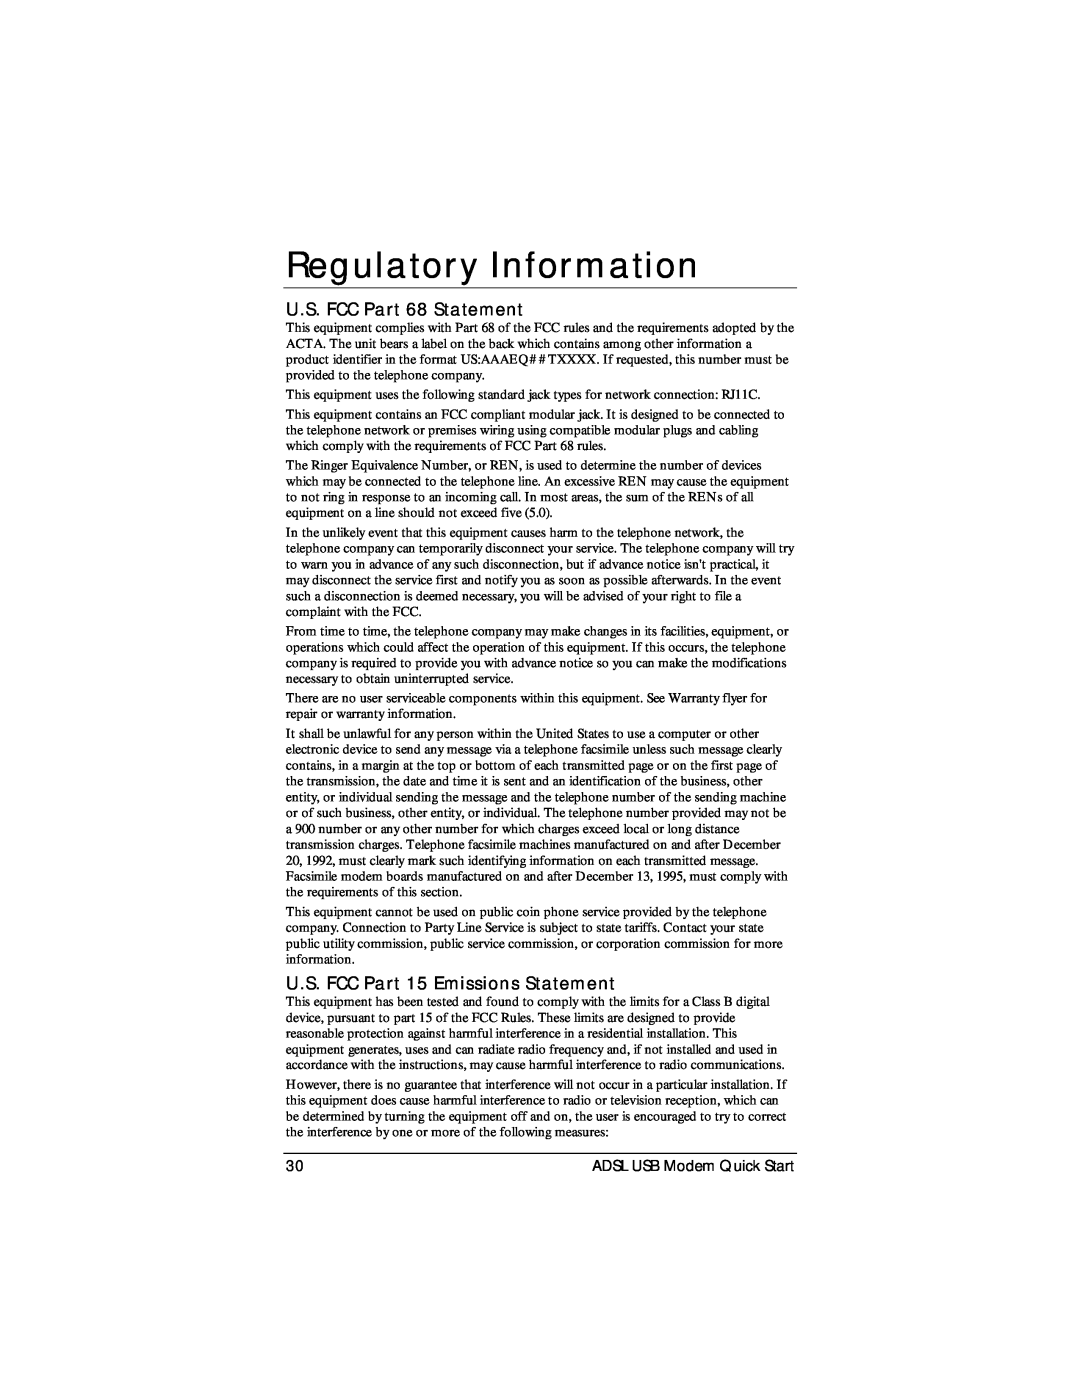 Zoom None quick start Regulatory Information, U.S. FCC Part 68 Statement, U.S. FCC Part 15 Emissions Statement 